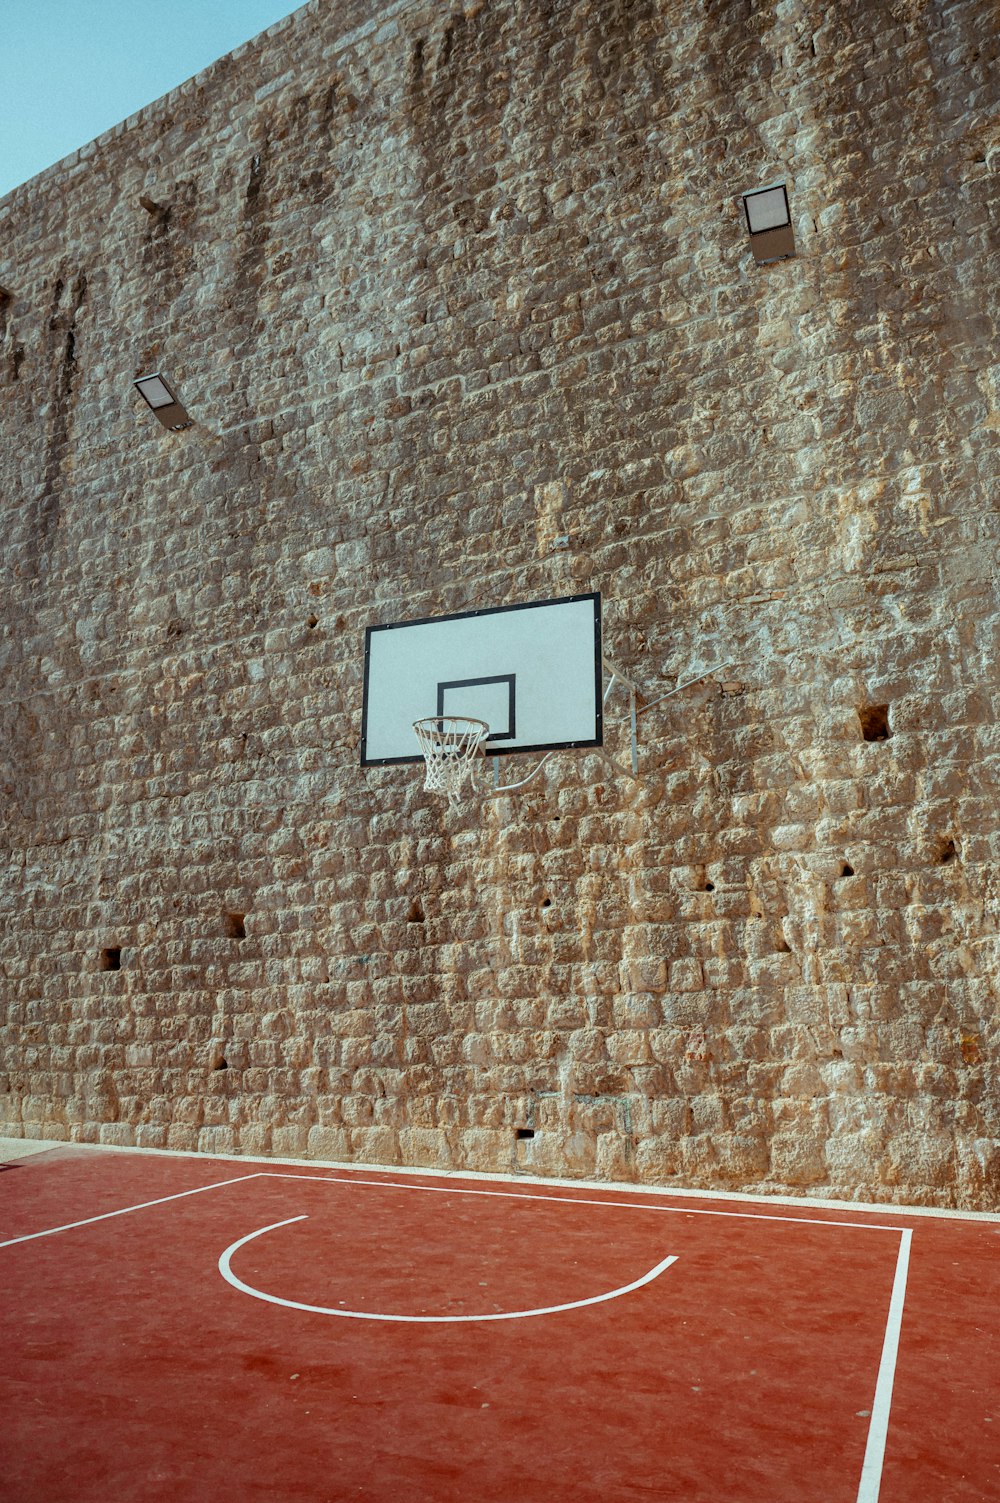 レンガの壁の前にあるバスケットボールコート